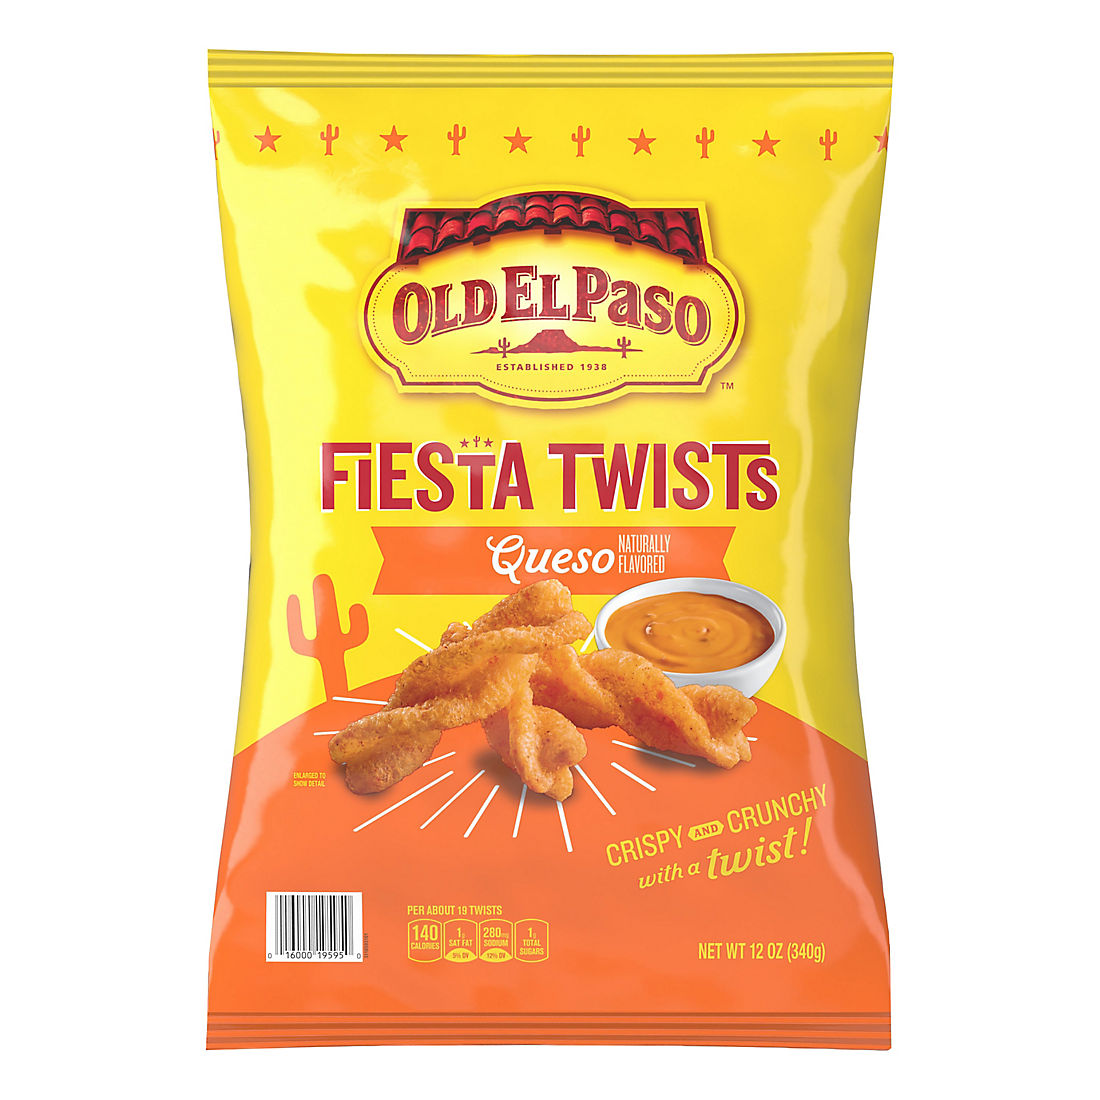 Old El Paso Fiesta Twists Queso, 12 oz.